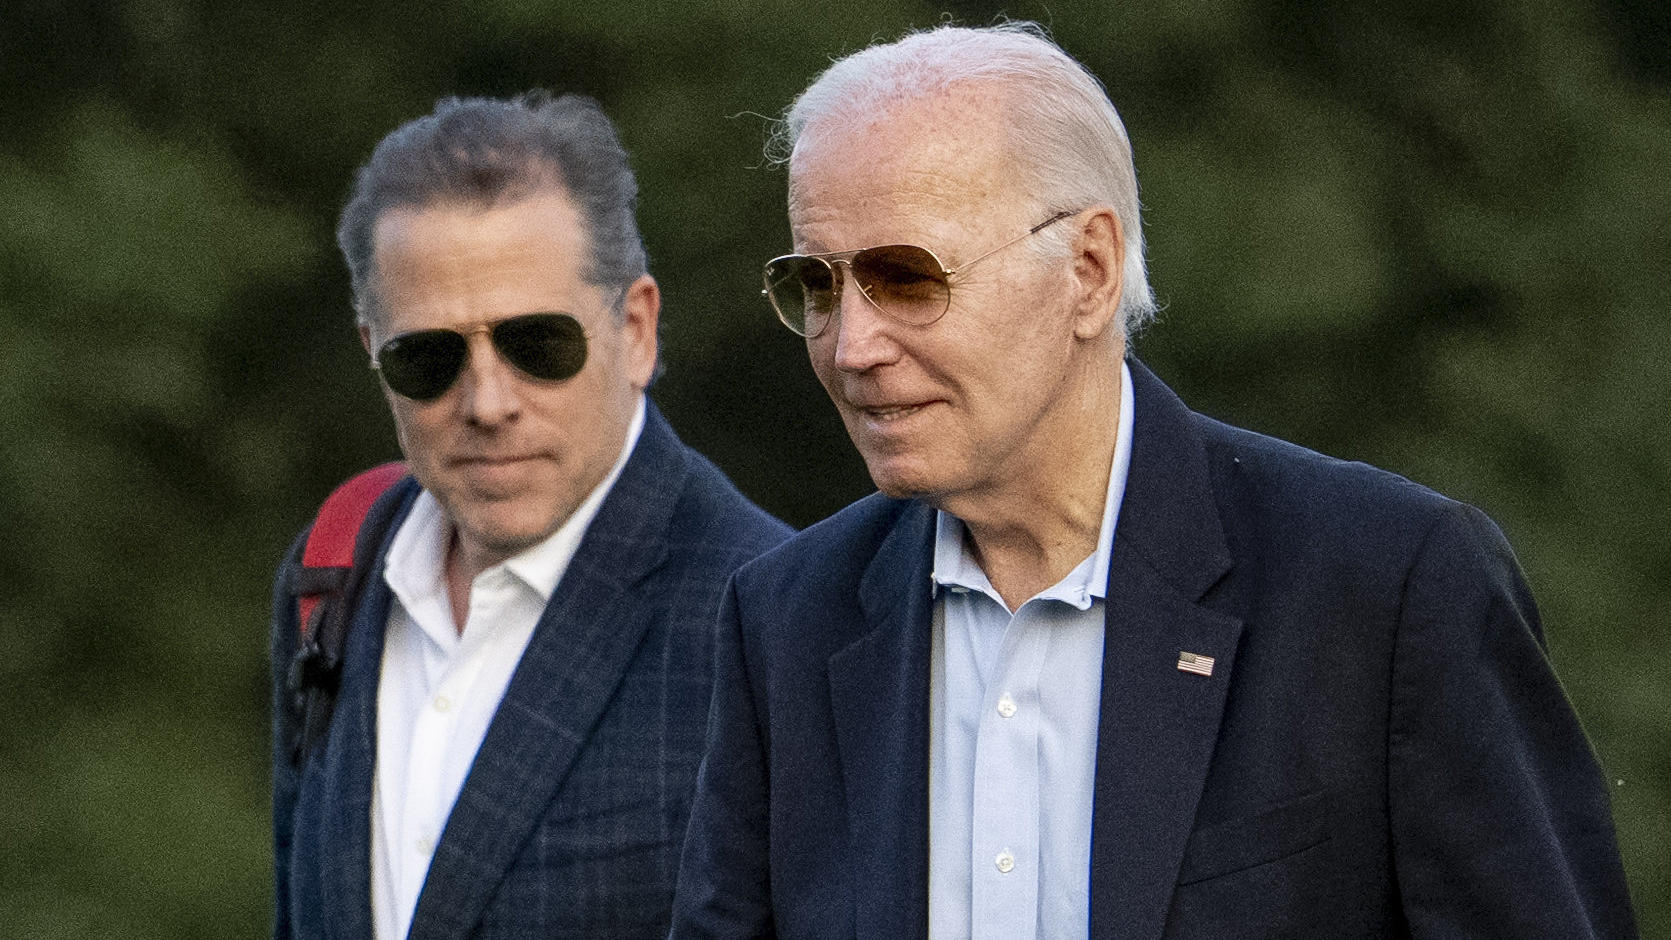 Vater und US-Präsident Joe Biden (80) hält zu seinem Sohn Hunter.